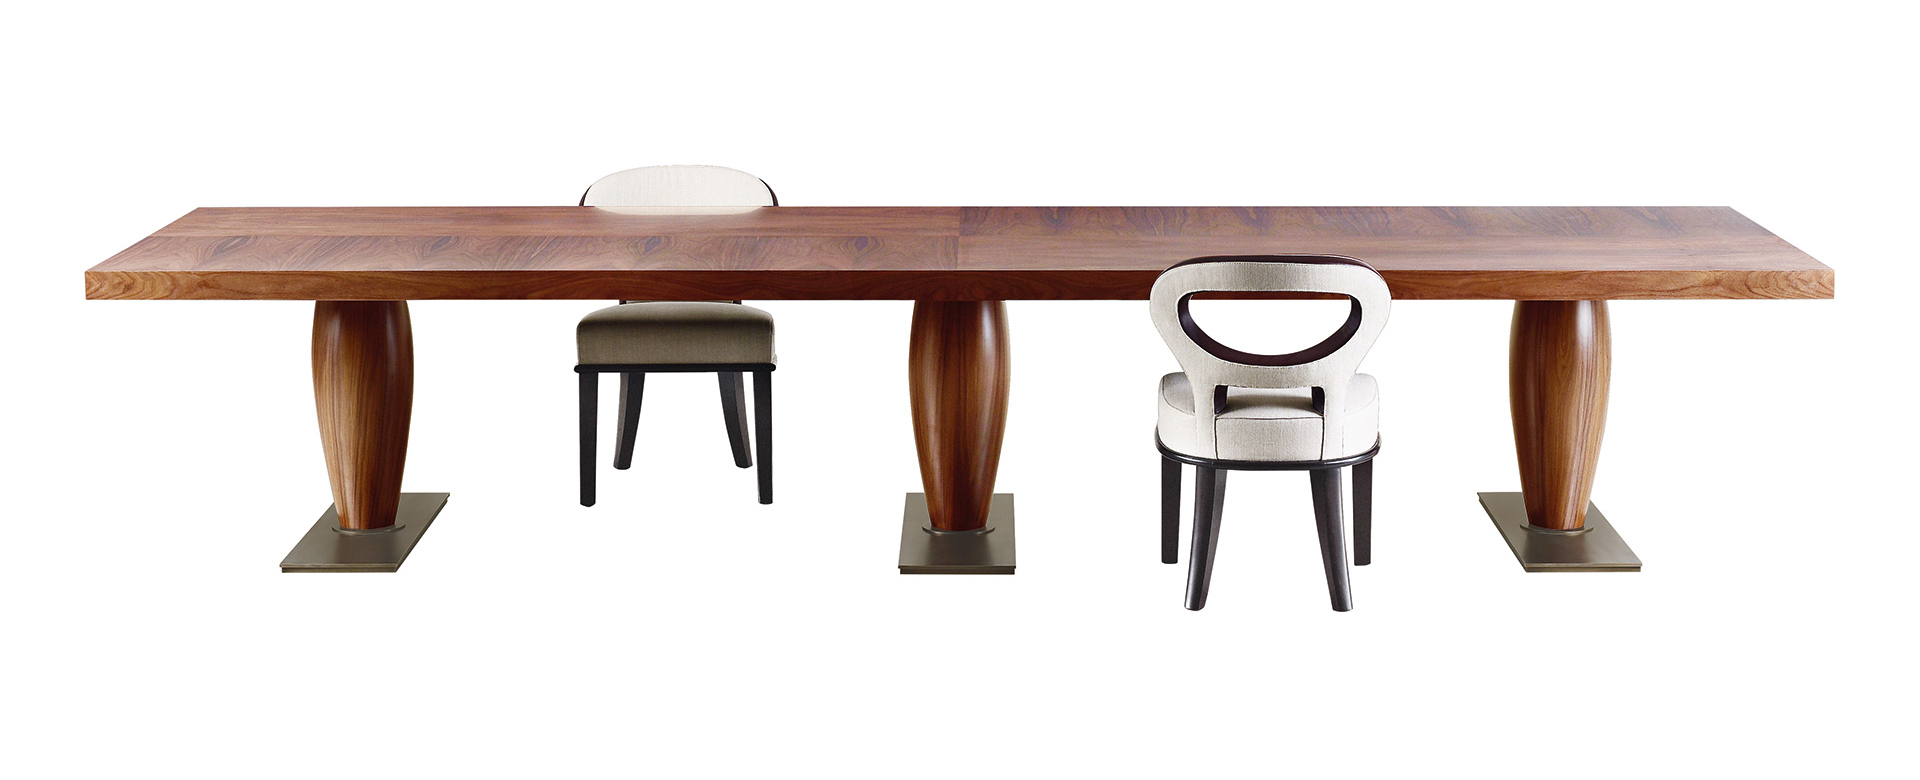 Bassano est une imposante table de salle à manger en bois, disponible avec plateau marqueté. Ce meuble figure dans le catalogue Promemoria | Promemoria